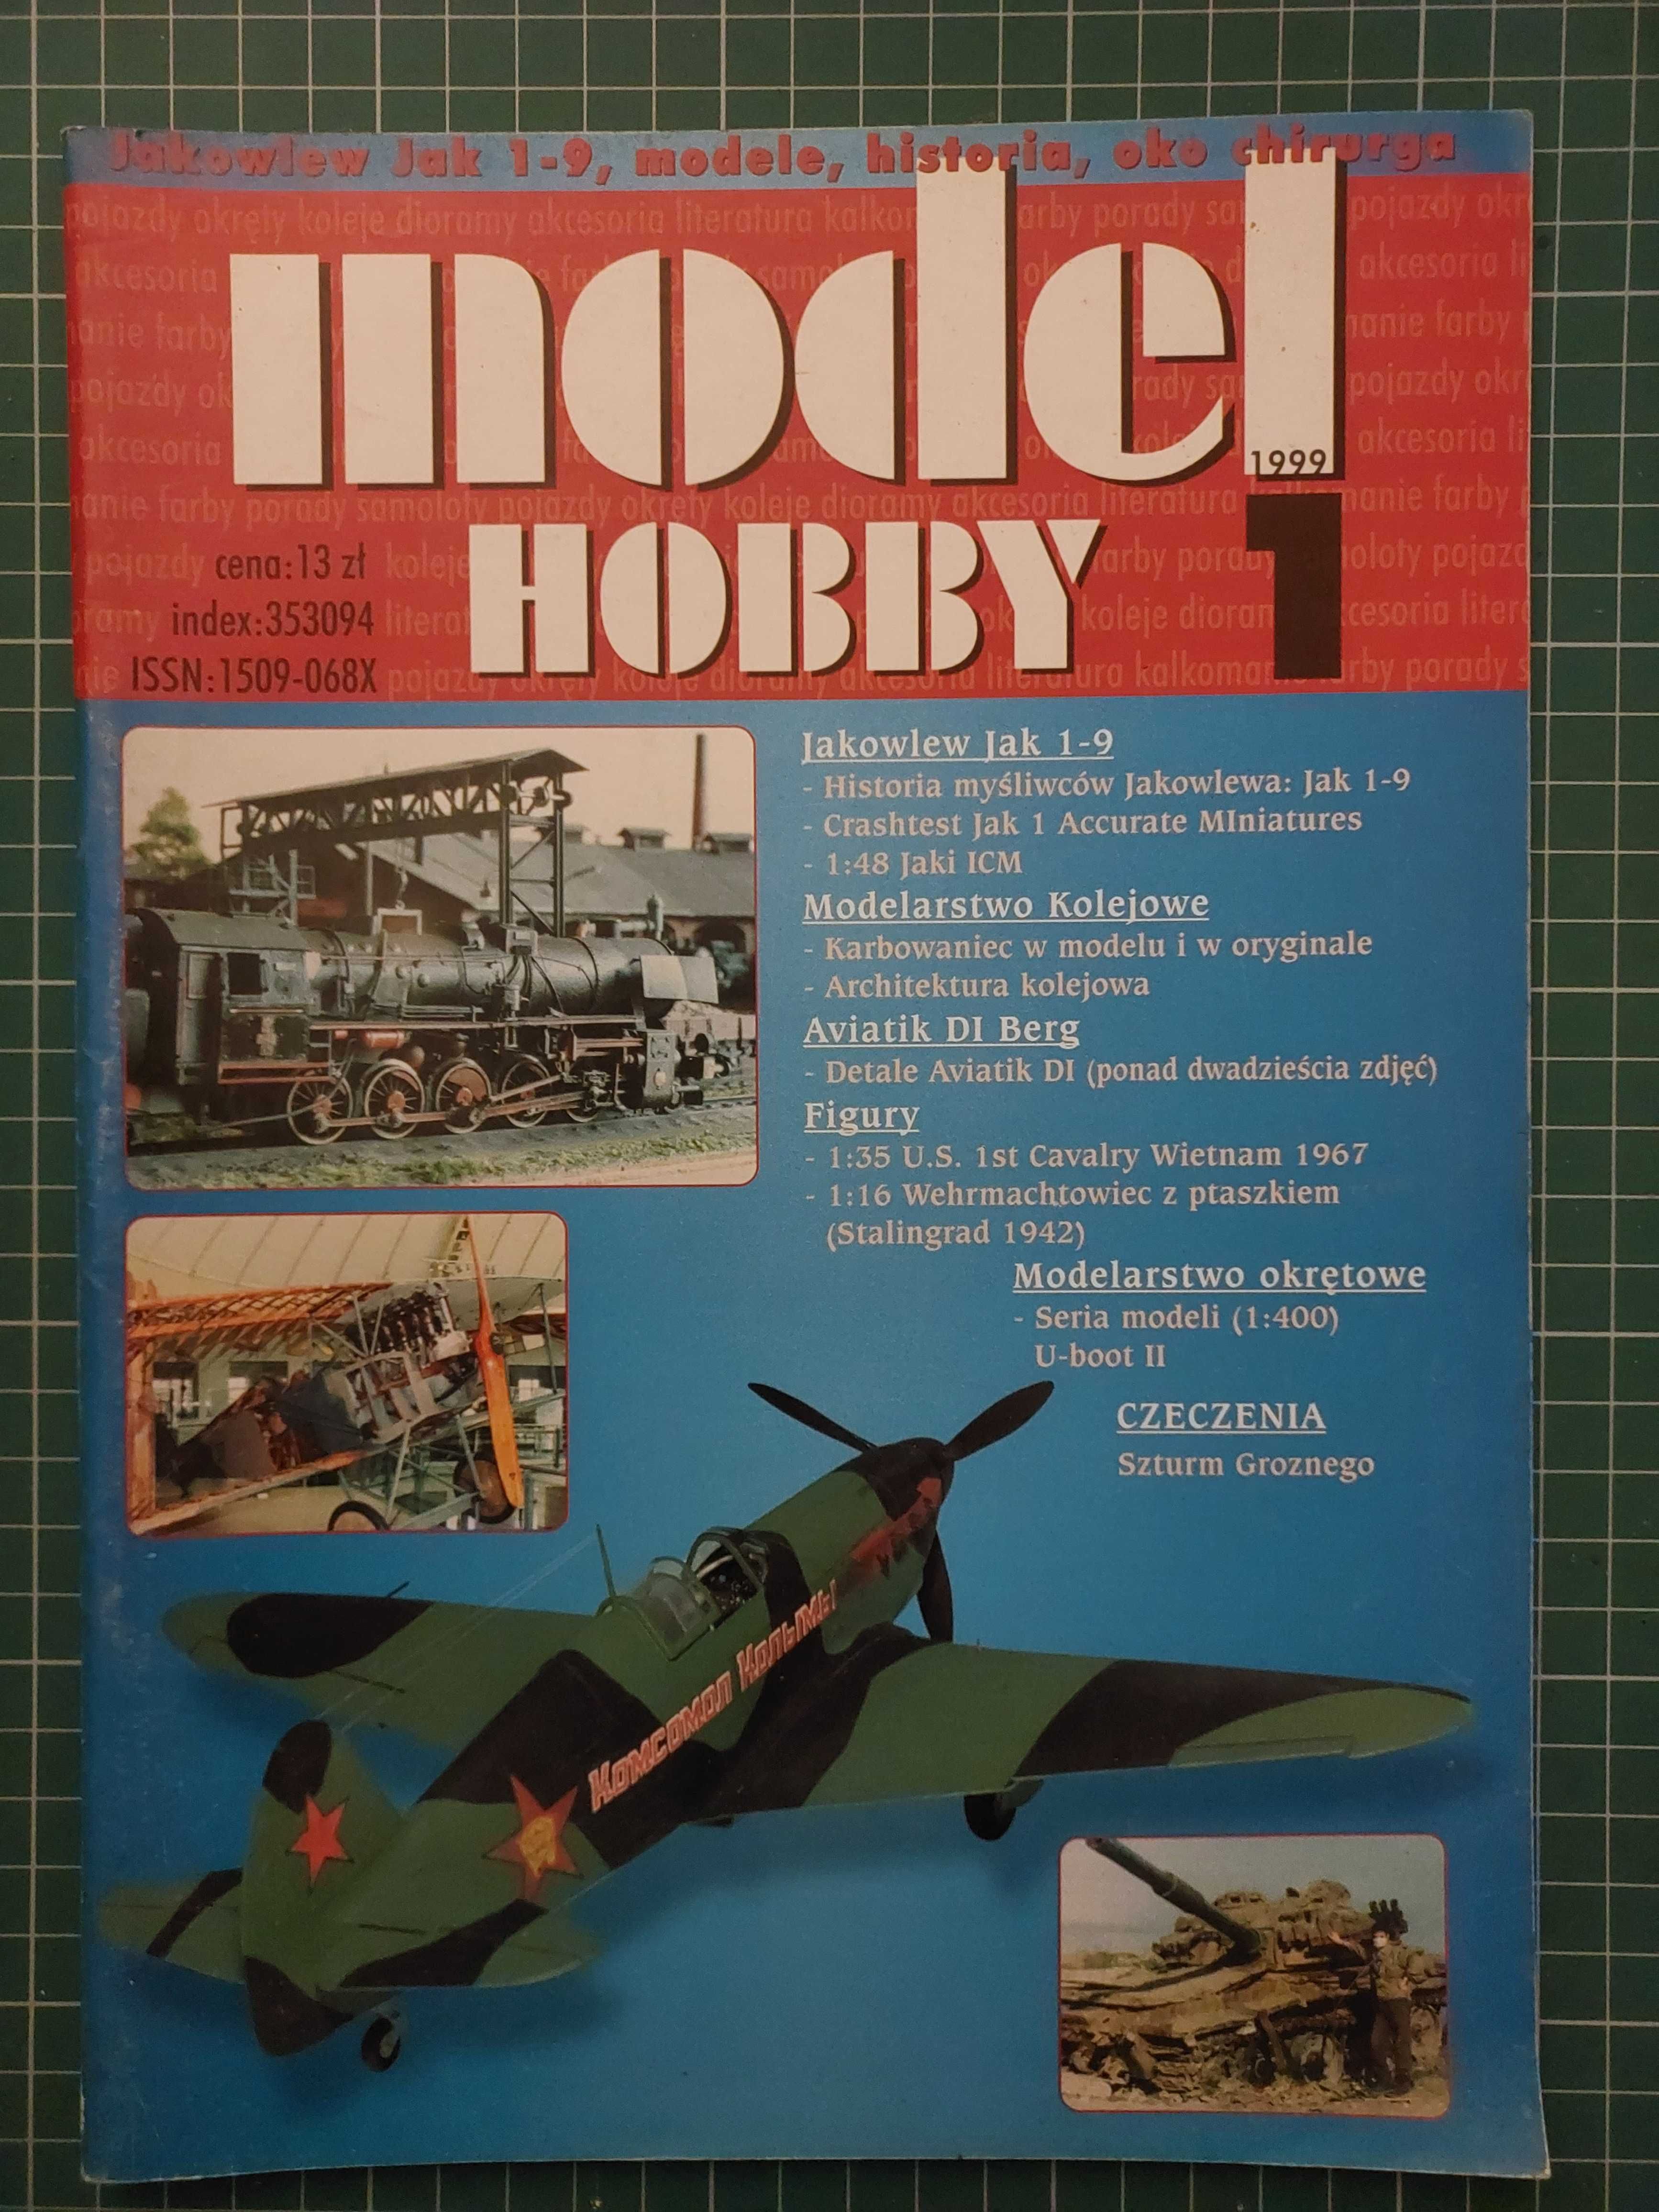 Sprzedam czasopismo Model Hobby, nr 1/1999